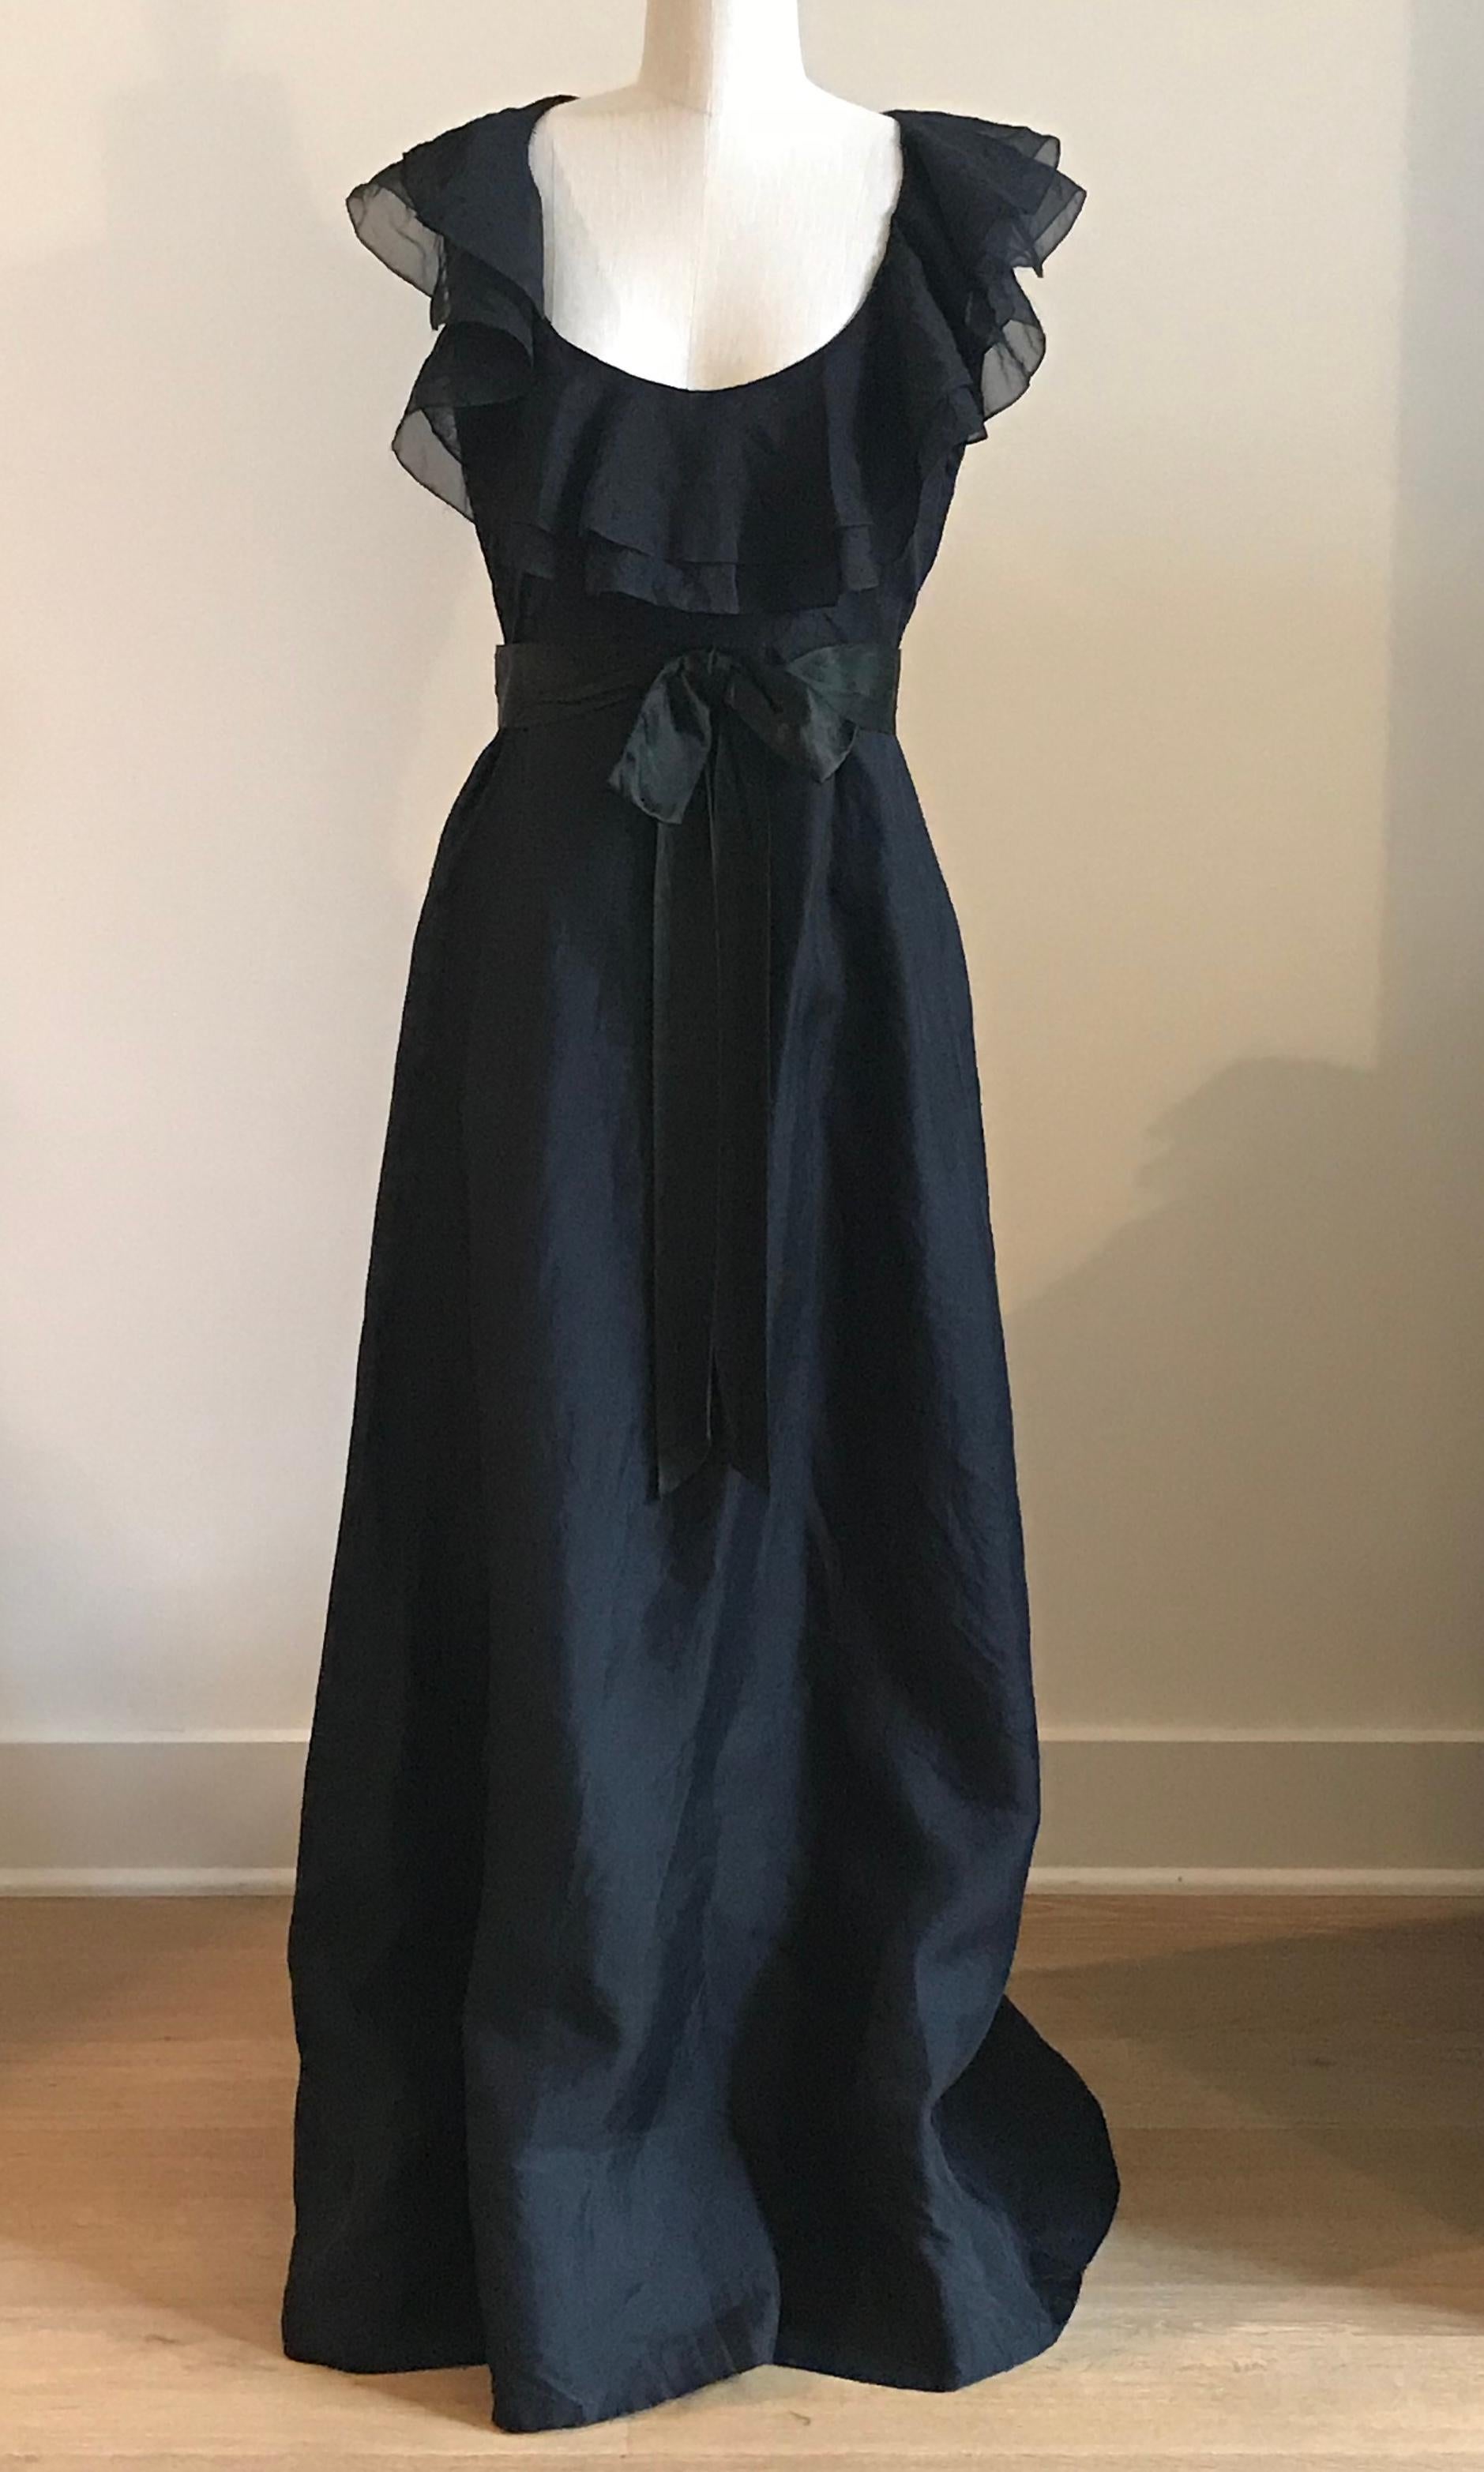 Schwarzes bodenlanges Kleid von Sarmi aus den 1960er Jahren mit tiefem Ausschnitt, umgeben von einer mehrlagigen Rüsche und einem Schleifengürtel in der Taille. Reißverschluss hinten.

Keine Inhaltsangabe, fühlt sich an wie ein mittelschwerer,